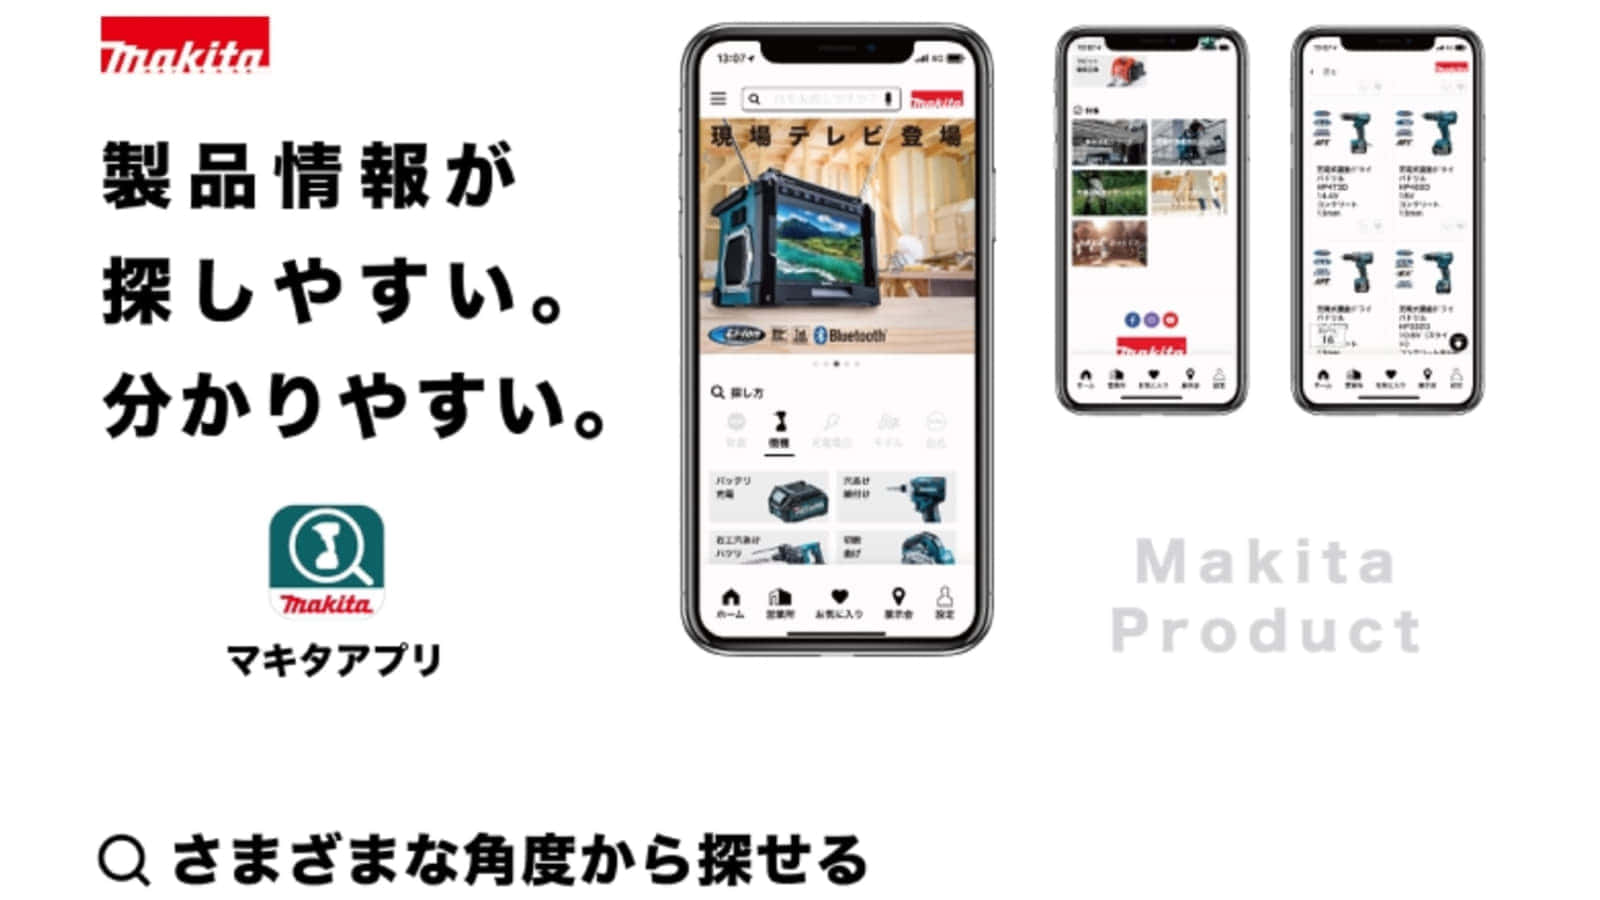 マキタ マキタ製品&営業所紹介アプリをリリース Android, iOS対応